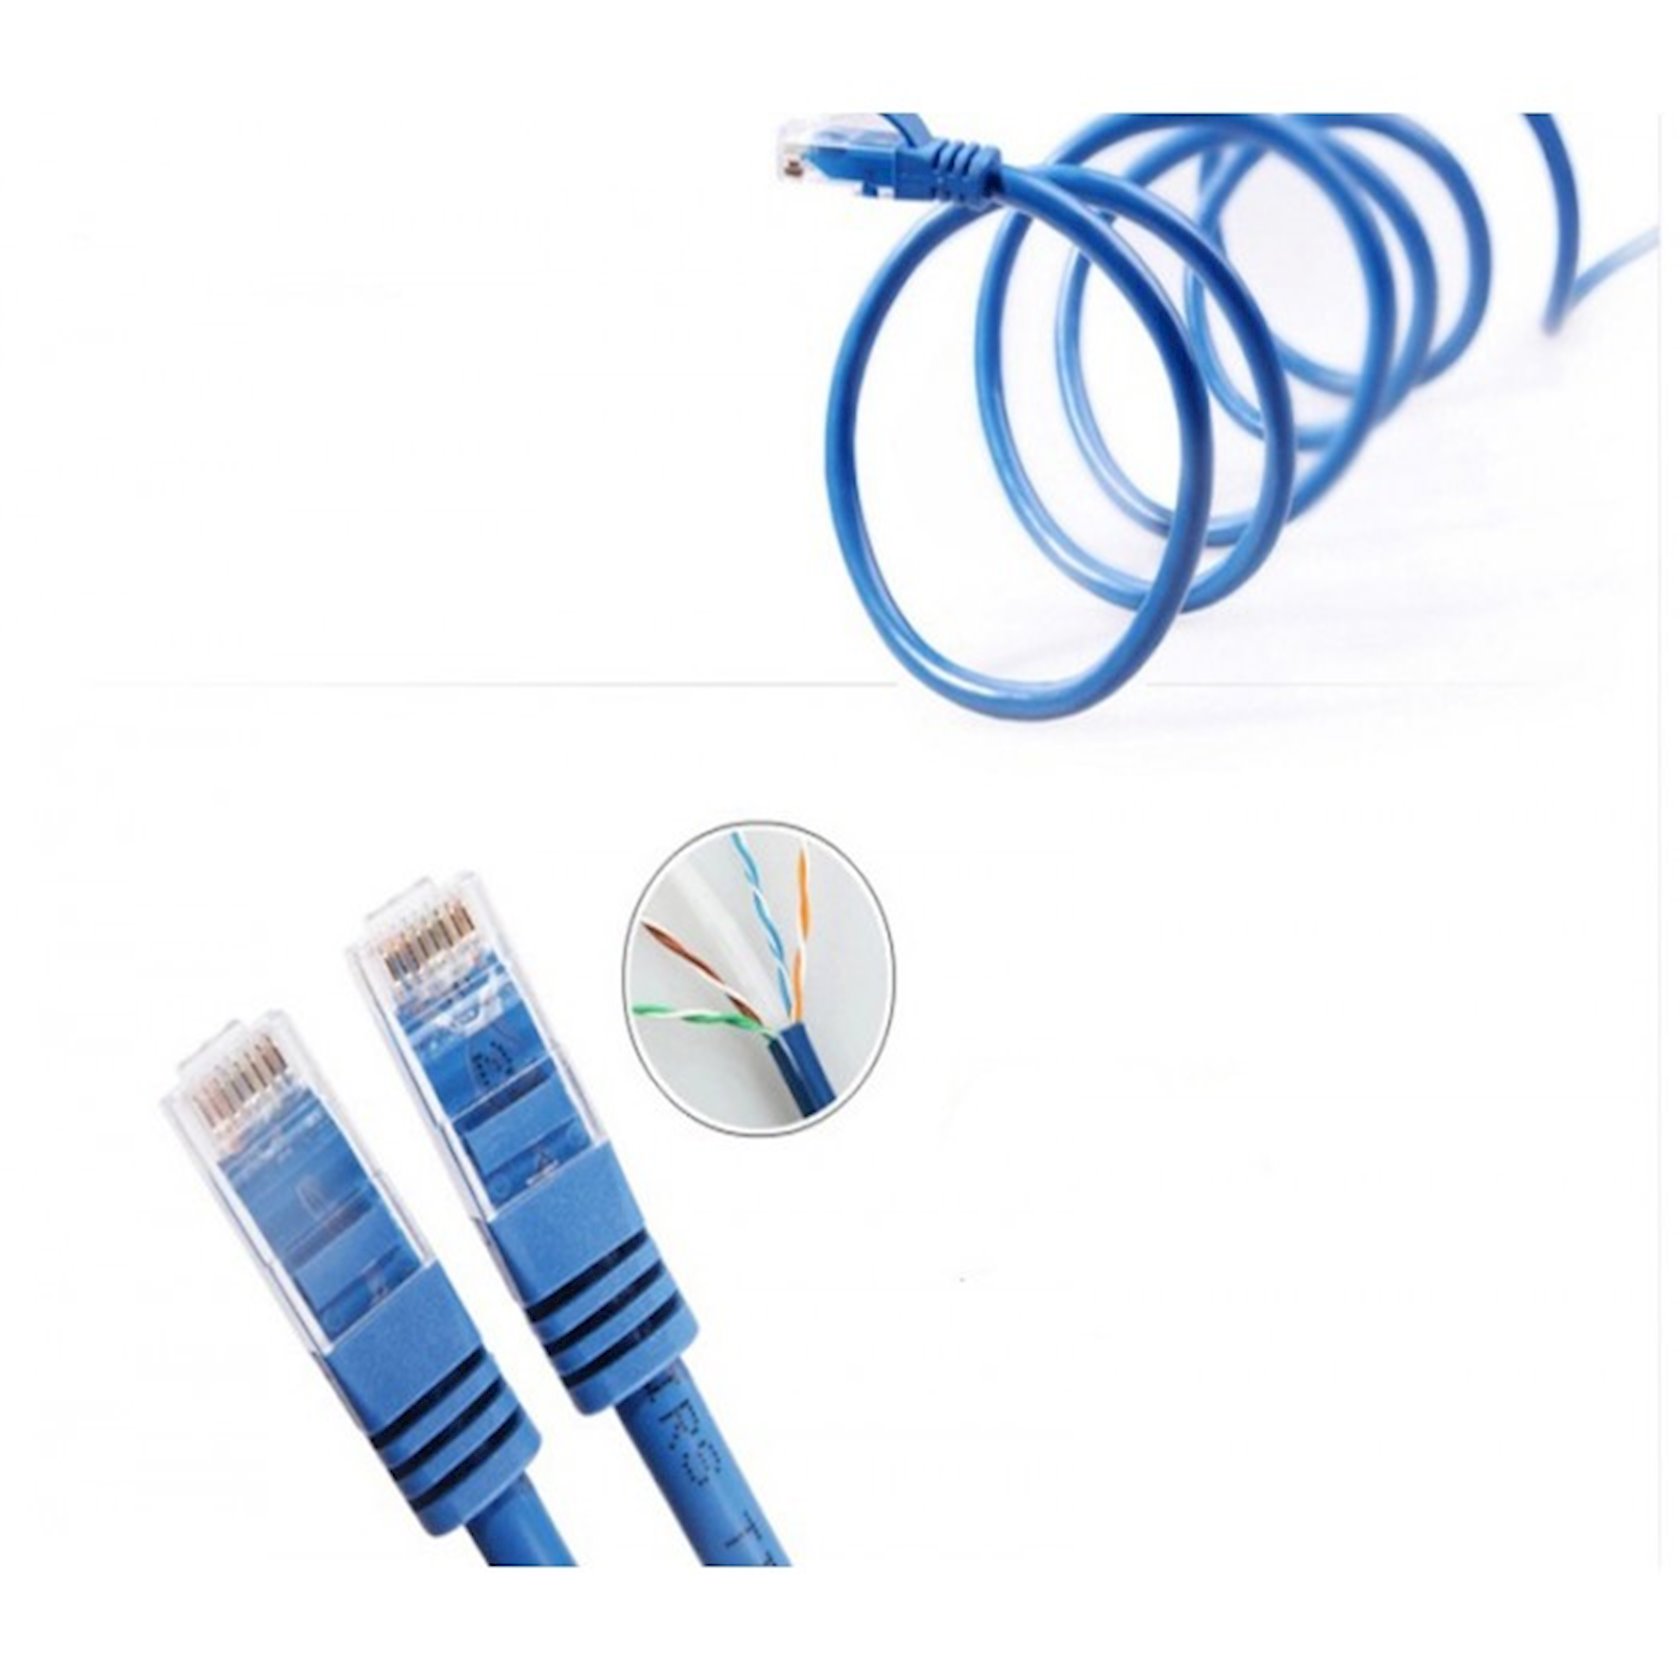  кабель Gigabit Ethernet 1.5 м -  в Баку. Цена, обзор .